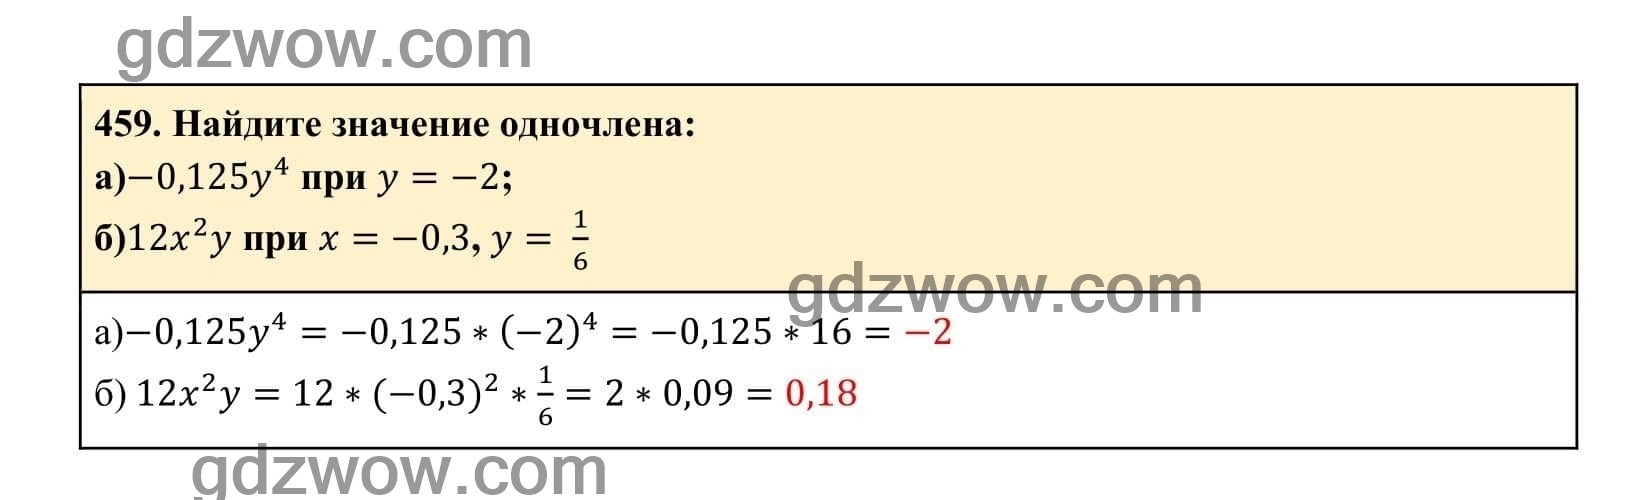 Упражнение 459 - ГДЗ по Алгебре 7 класс Учебник Макарычев (решебник) - GDZwow